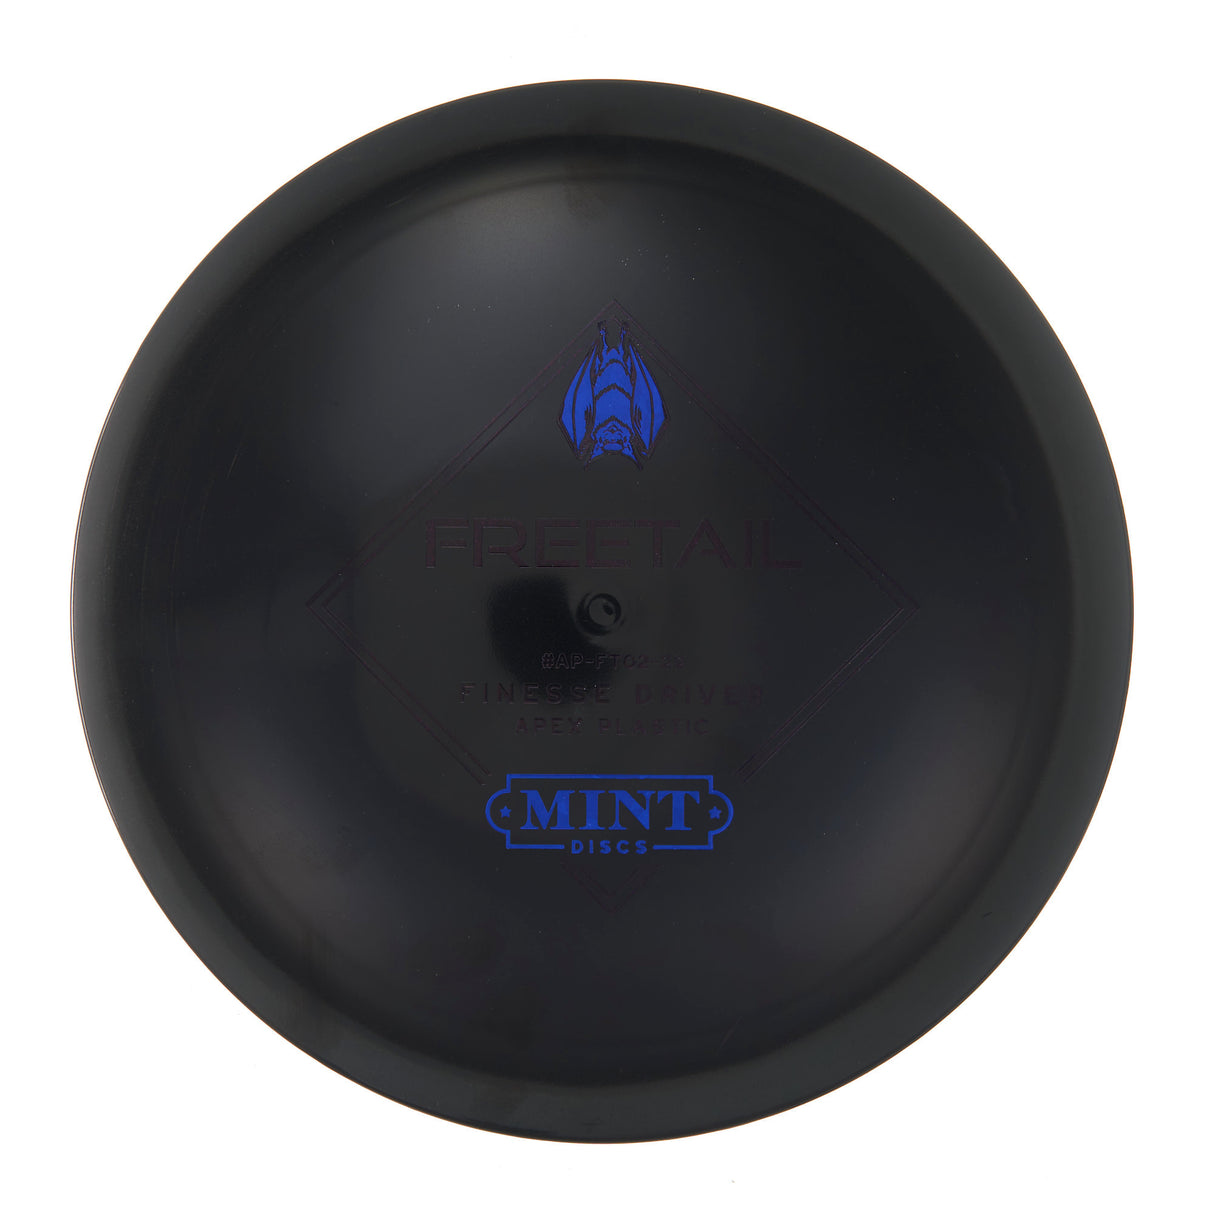 Mint Discs Freetail - Apex 173g | Style 0001